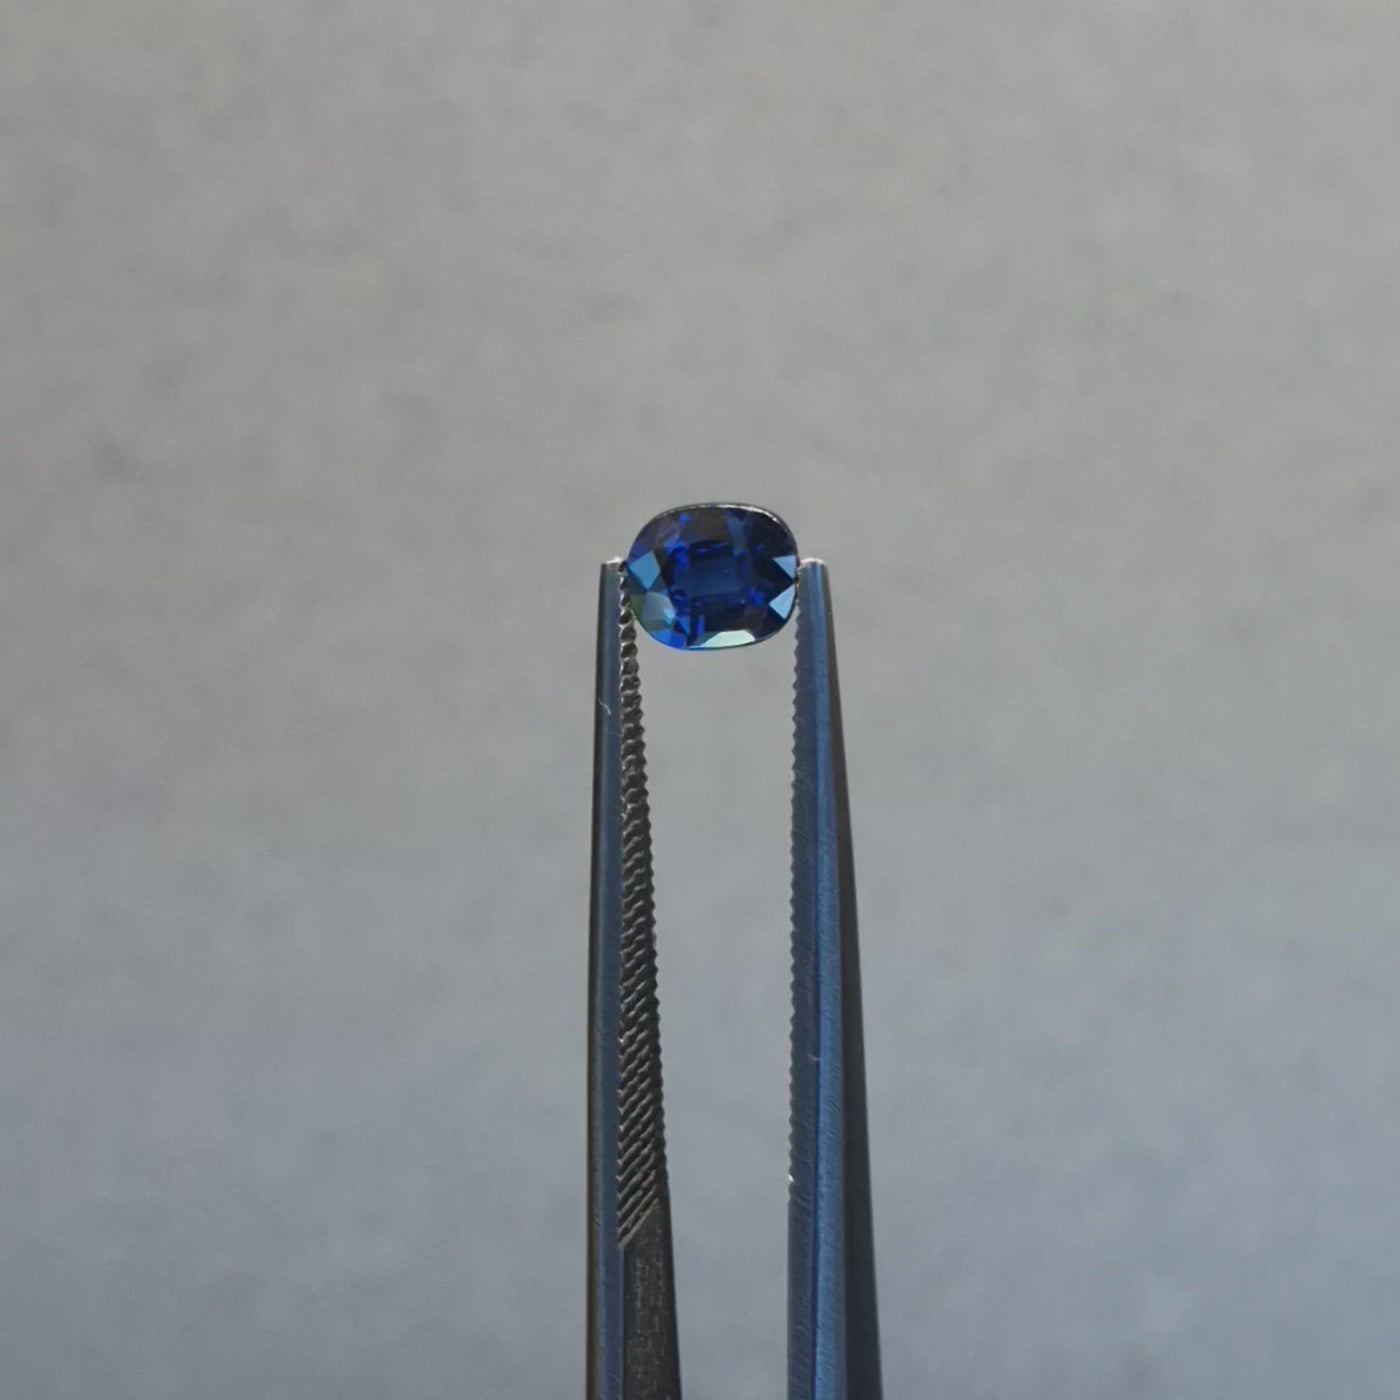 0.72ct Australian Sapphire, Blue - Cushion